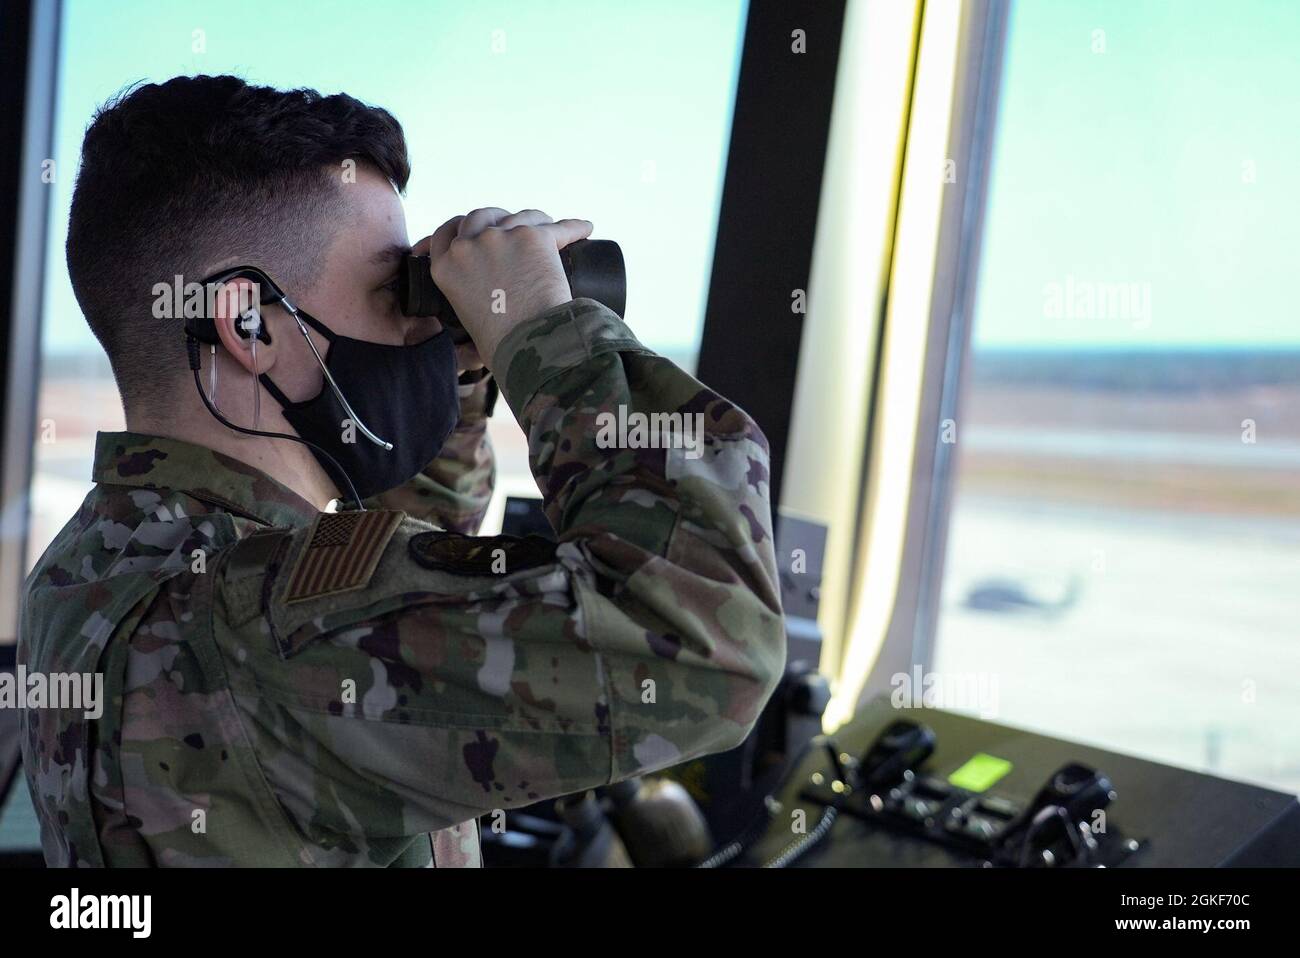 Personal Sgt. Aaron Troxell, 96th Controlador de tráfico aéreo de Soporte de Operaciones Squadron, observa aeronaves desde la torre de control en Duke Field, Florida, 6 de abril de 2021. Los controladores de tráfico aéreo soportan un promedio de 35.000 operaciones de vuelo en el aeródromo anualmente. Foto de stock